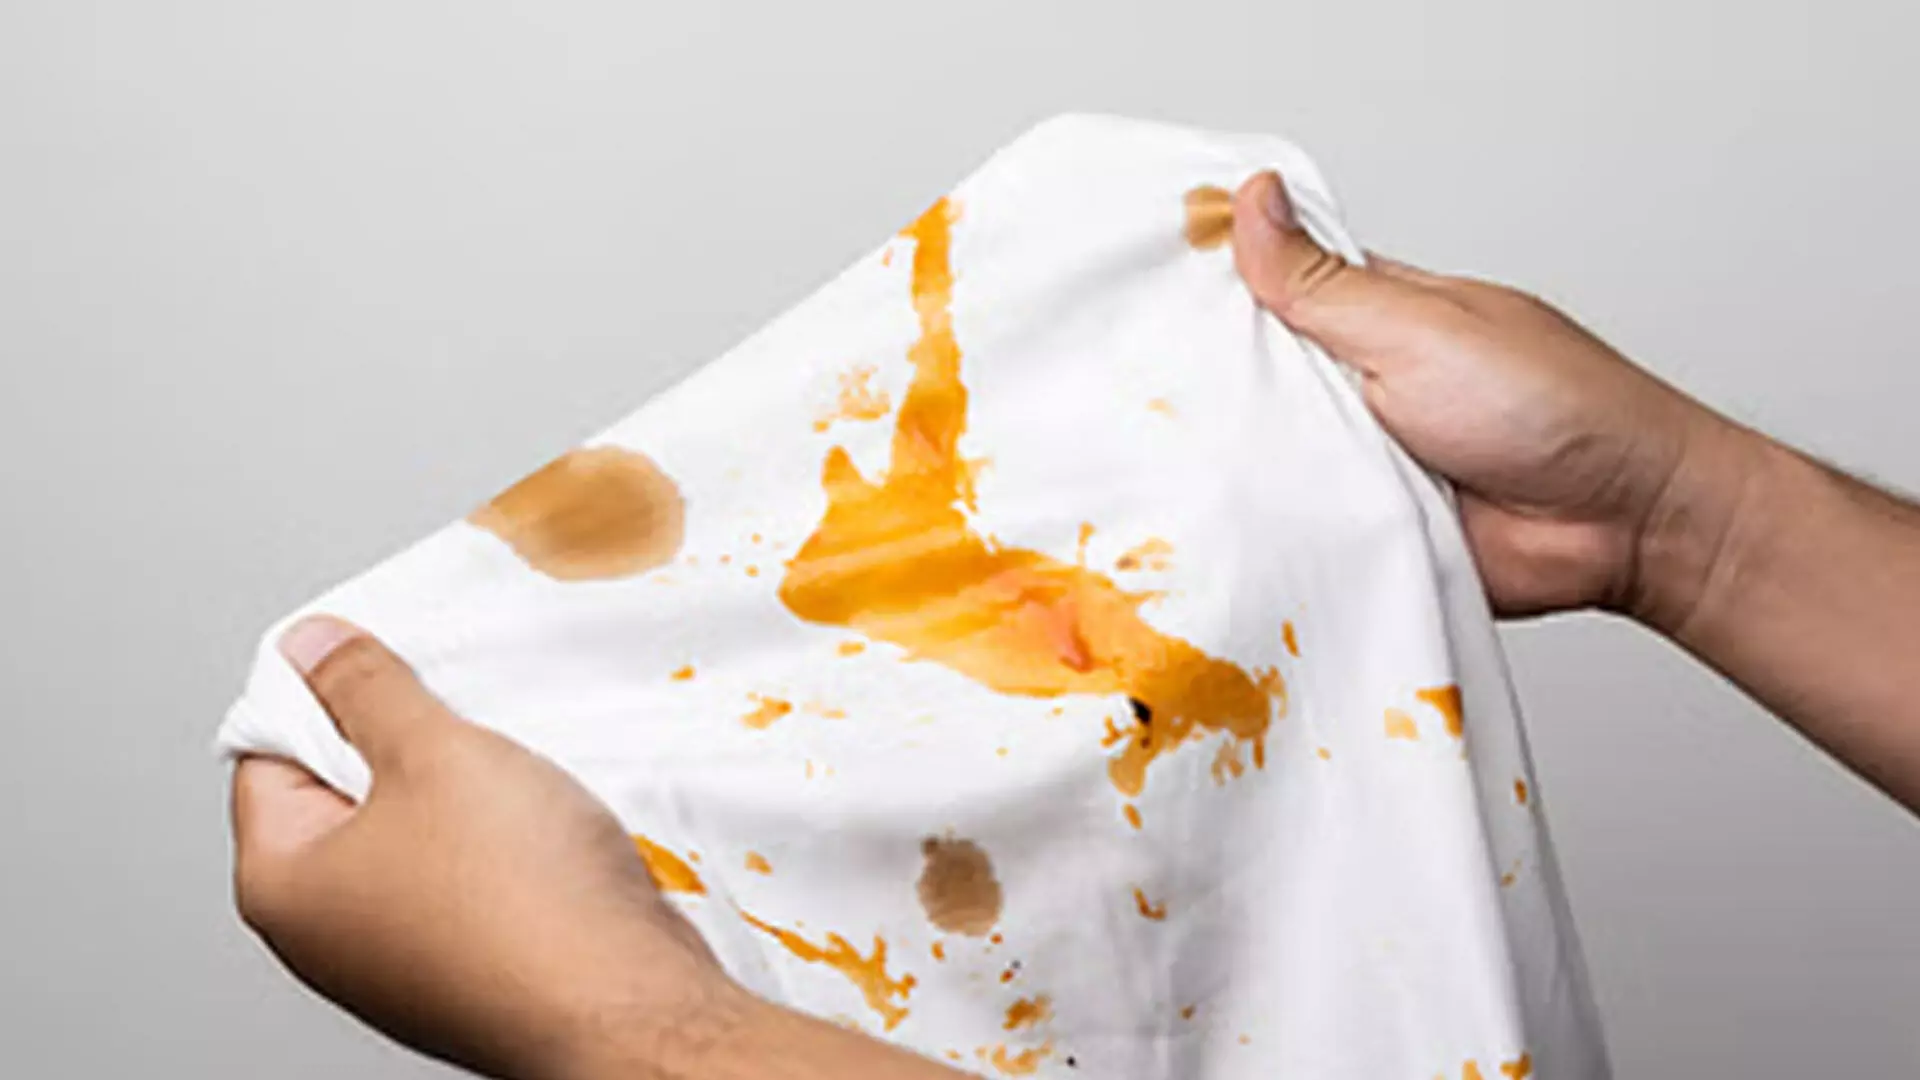 Stubborn stains: इन तरीकों से हटाए कपड़ों पर लगे जिद्दी दाग, बिना मेहनत के होगा काम